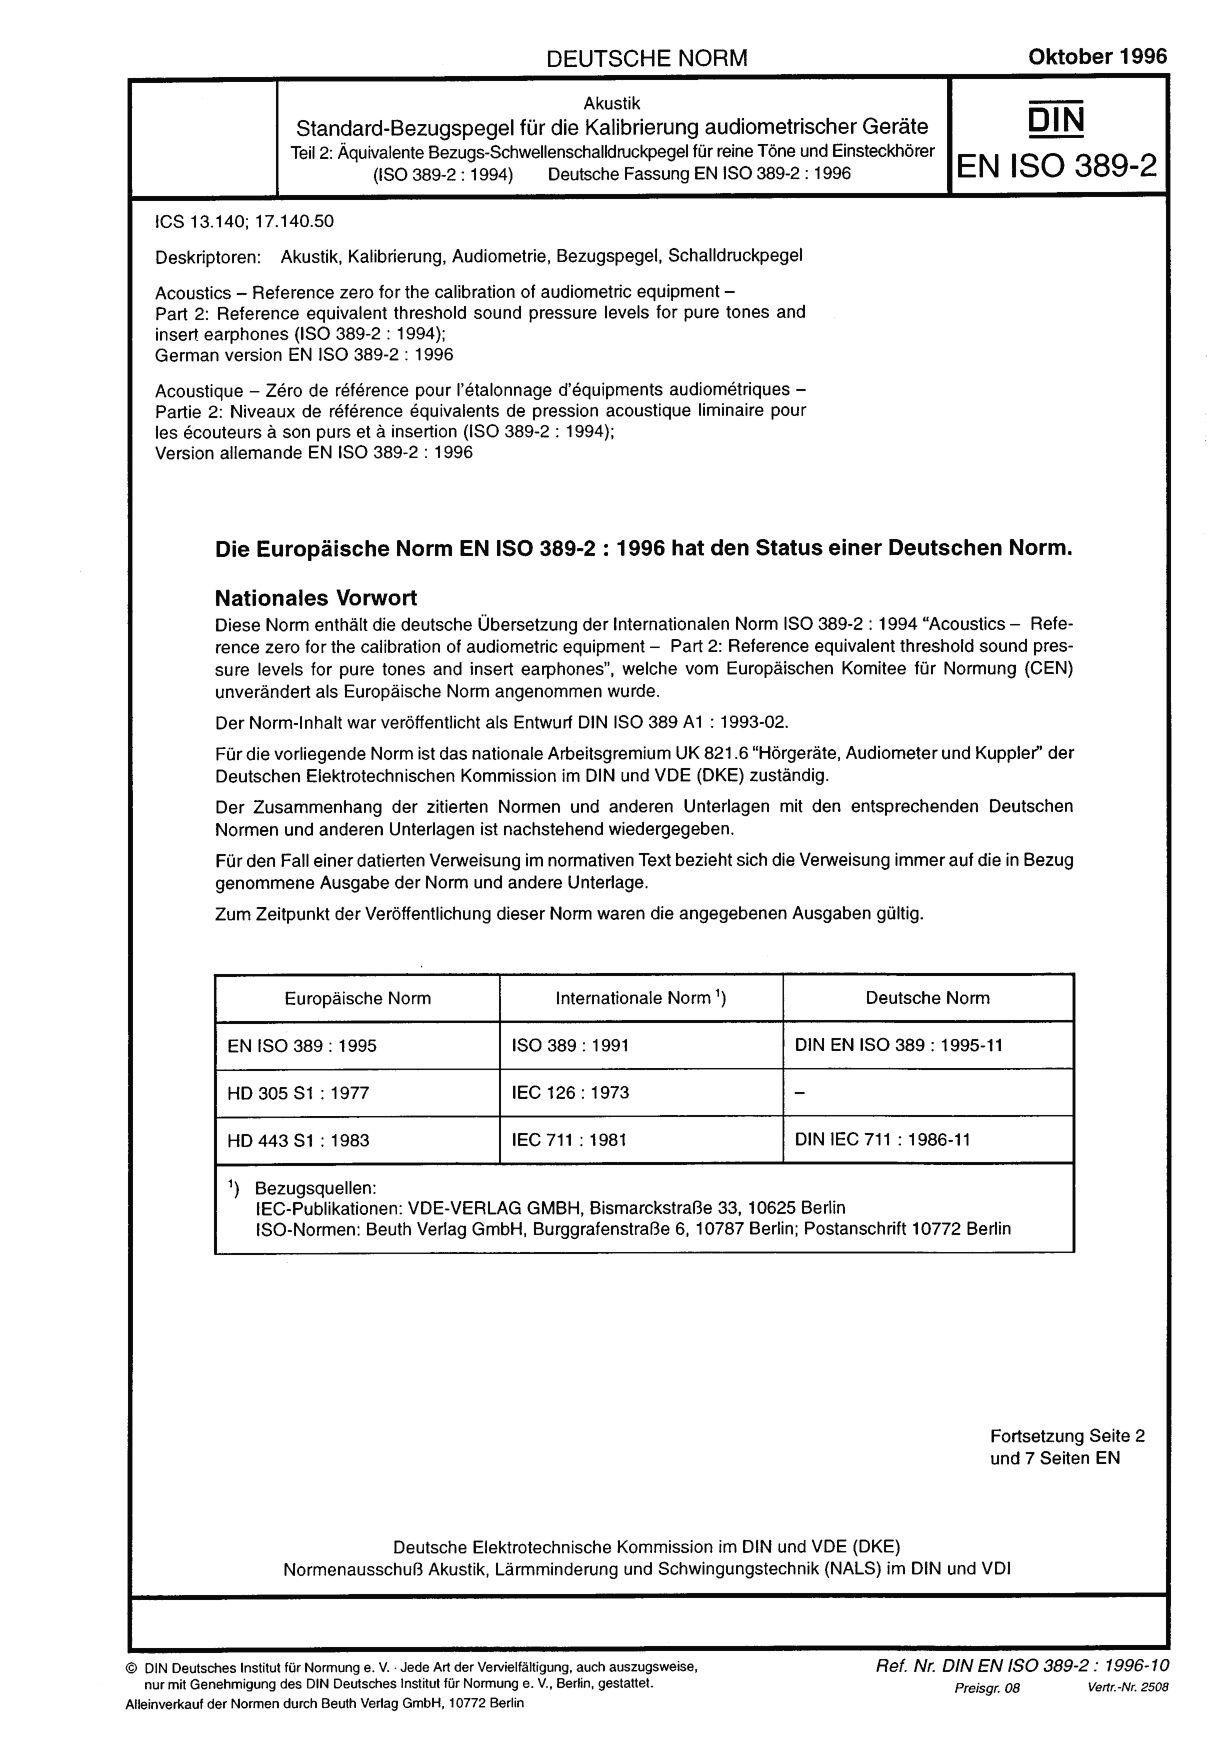 DIN EN ISO 389-2:1996